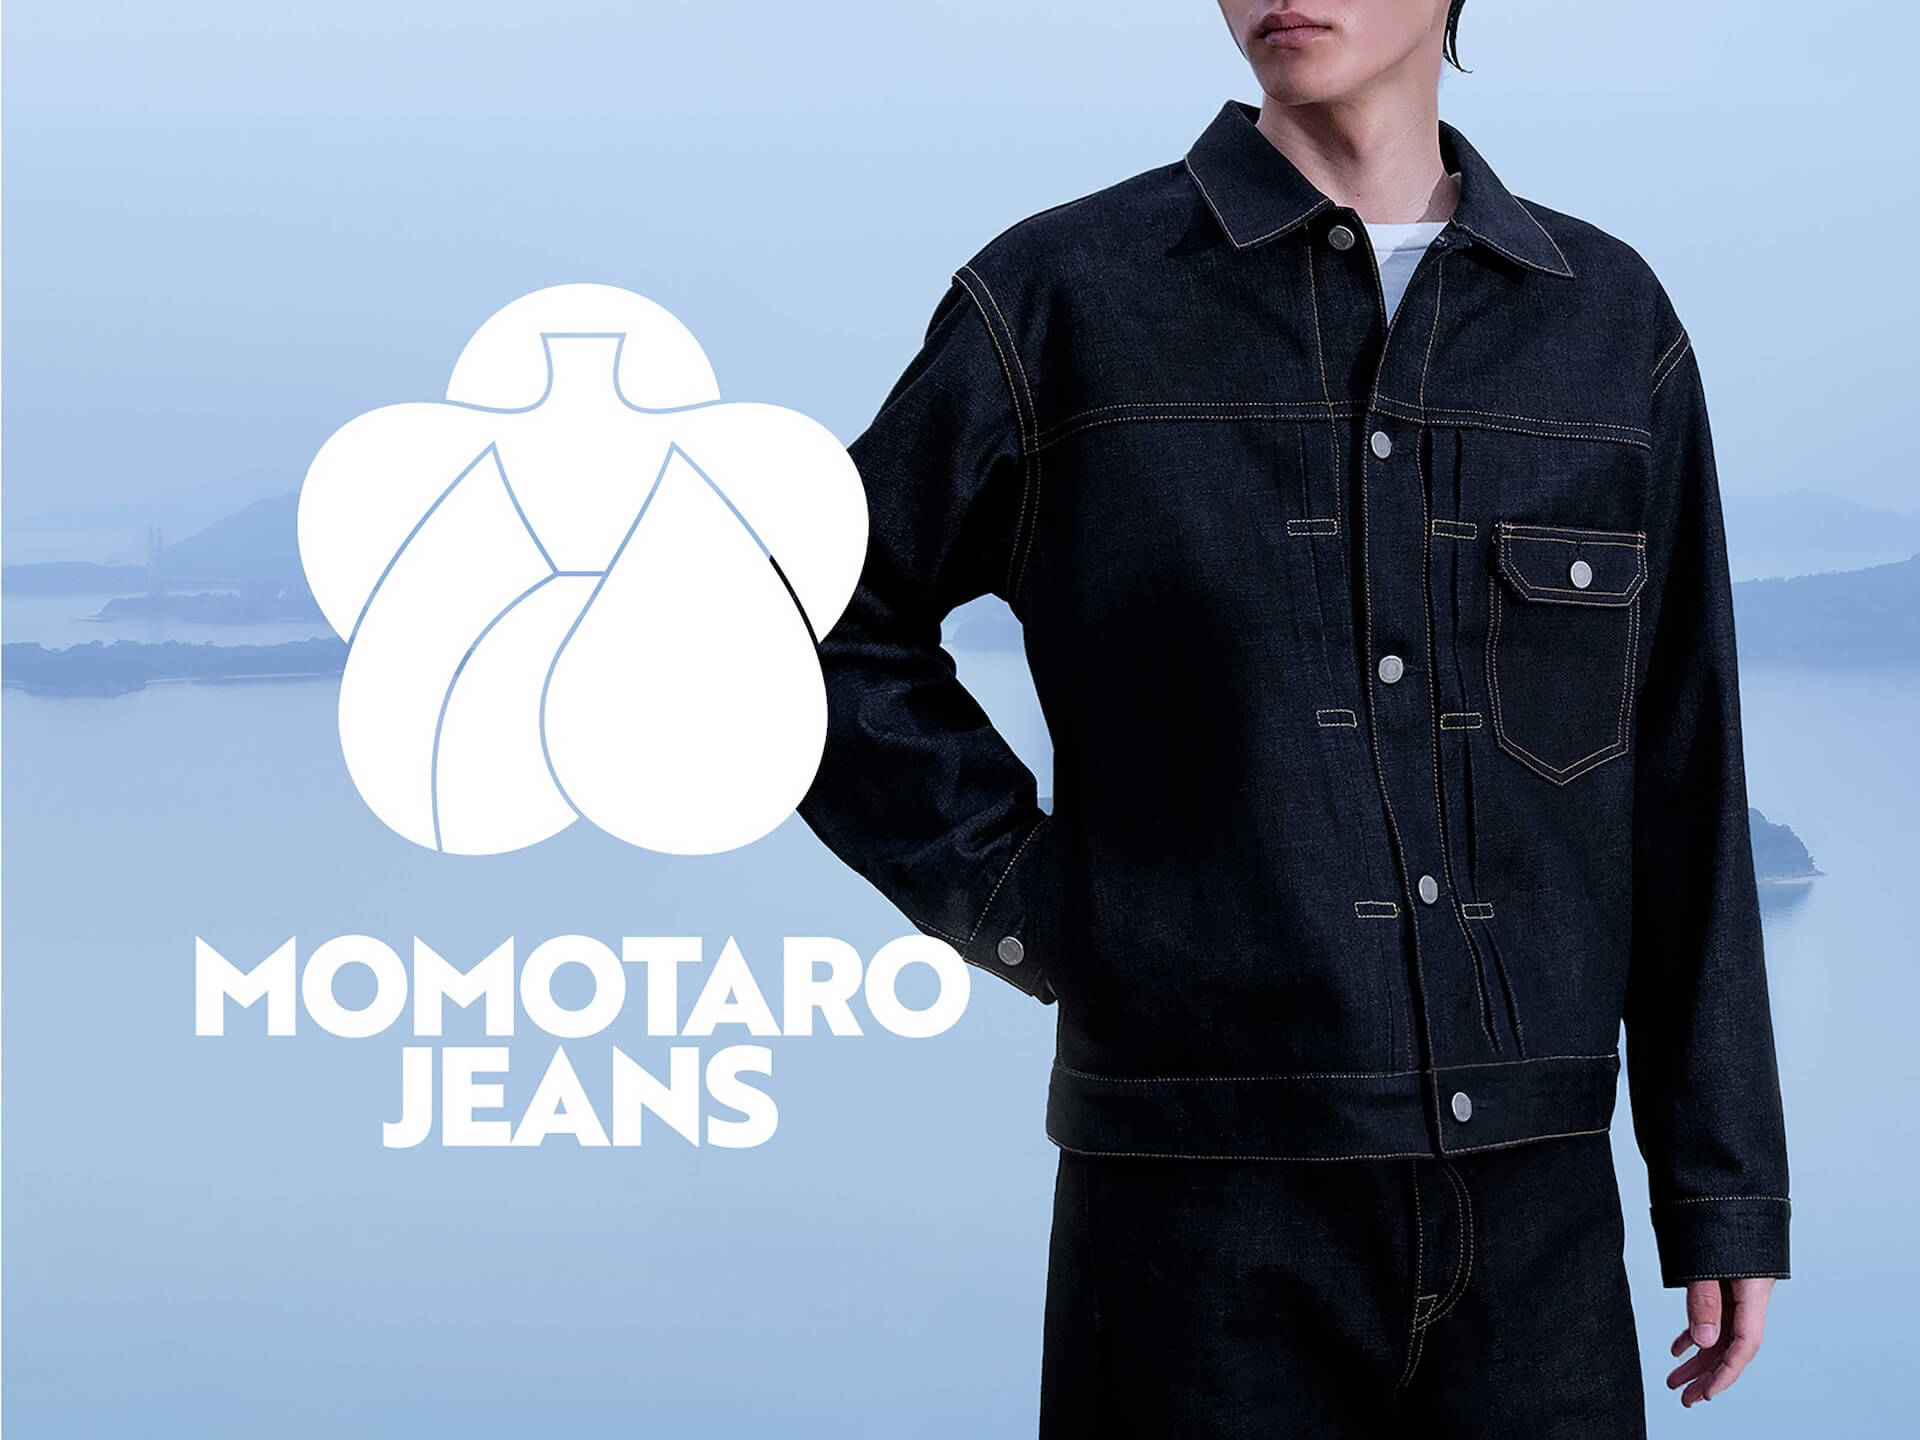 岡山・児島発の最高峰ジーンズブランド・MOMOTARO JEANSが世界への発信拠点として「MOMOTARO JEANS KYOTO」をオープン lifefashion240802-momotaro-jeans-kyoto2